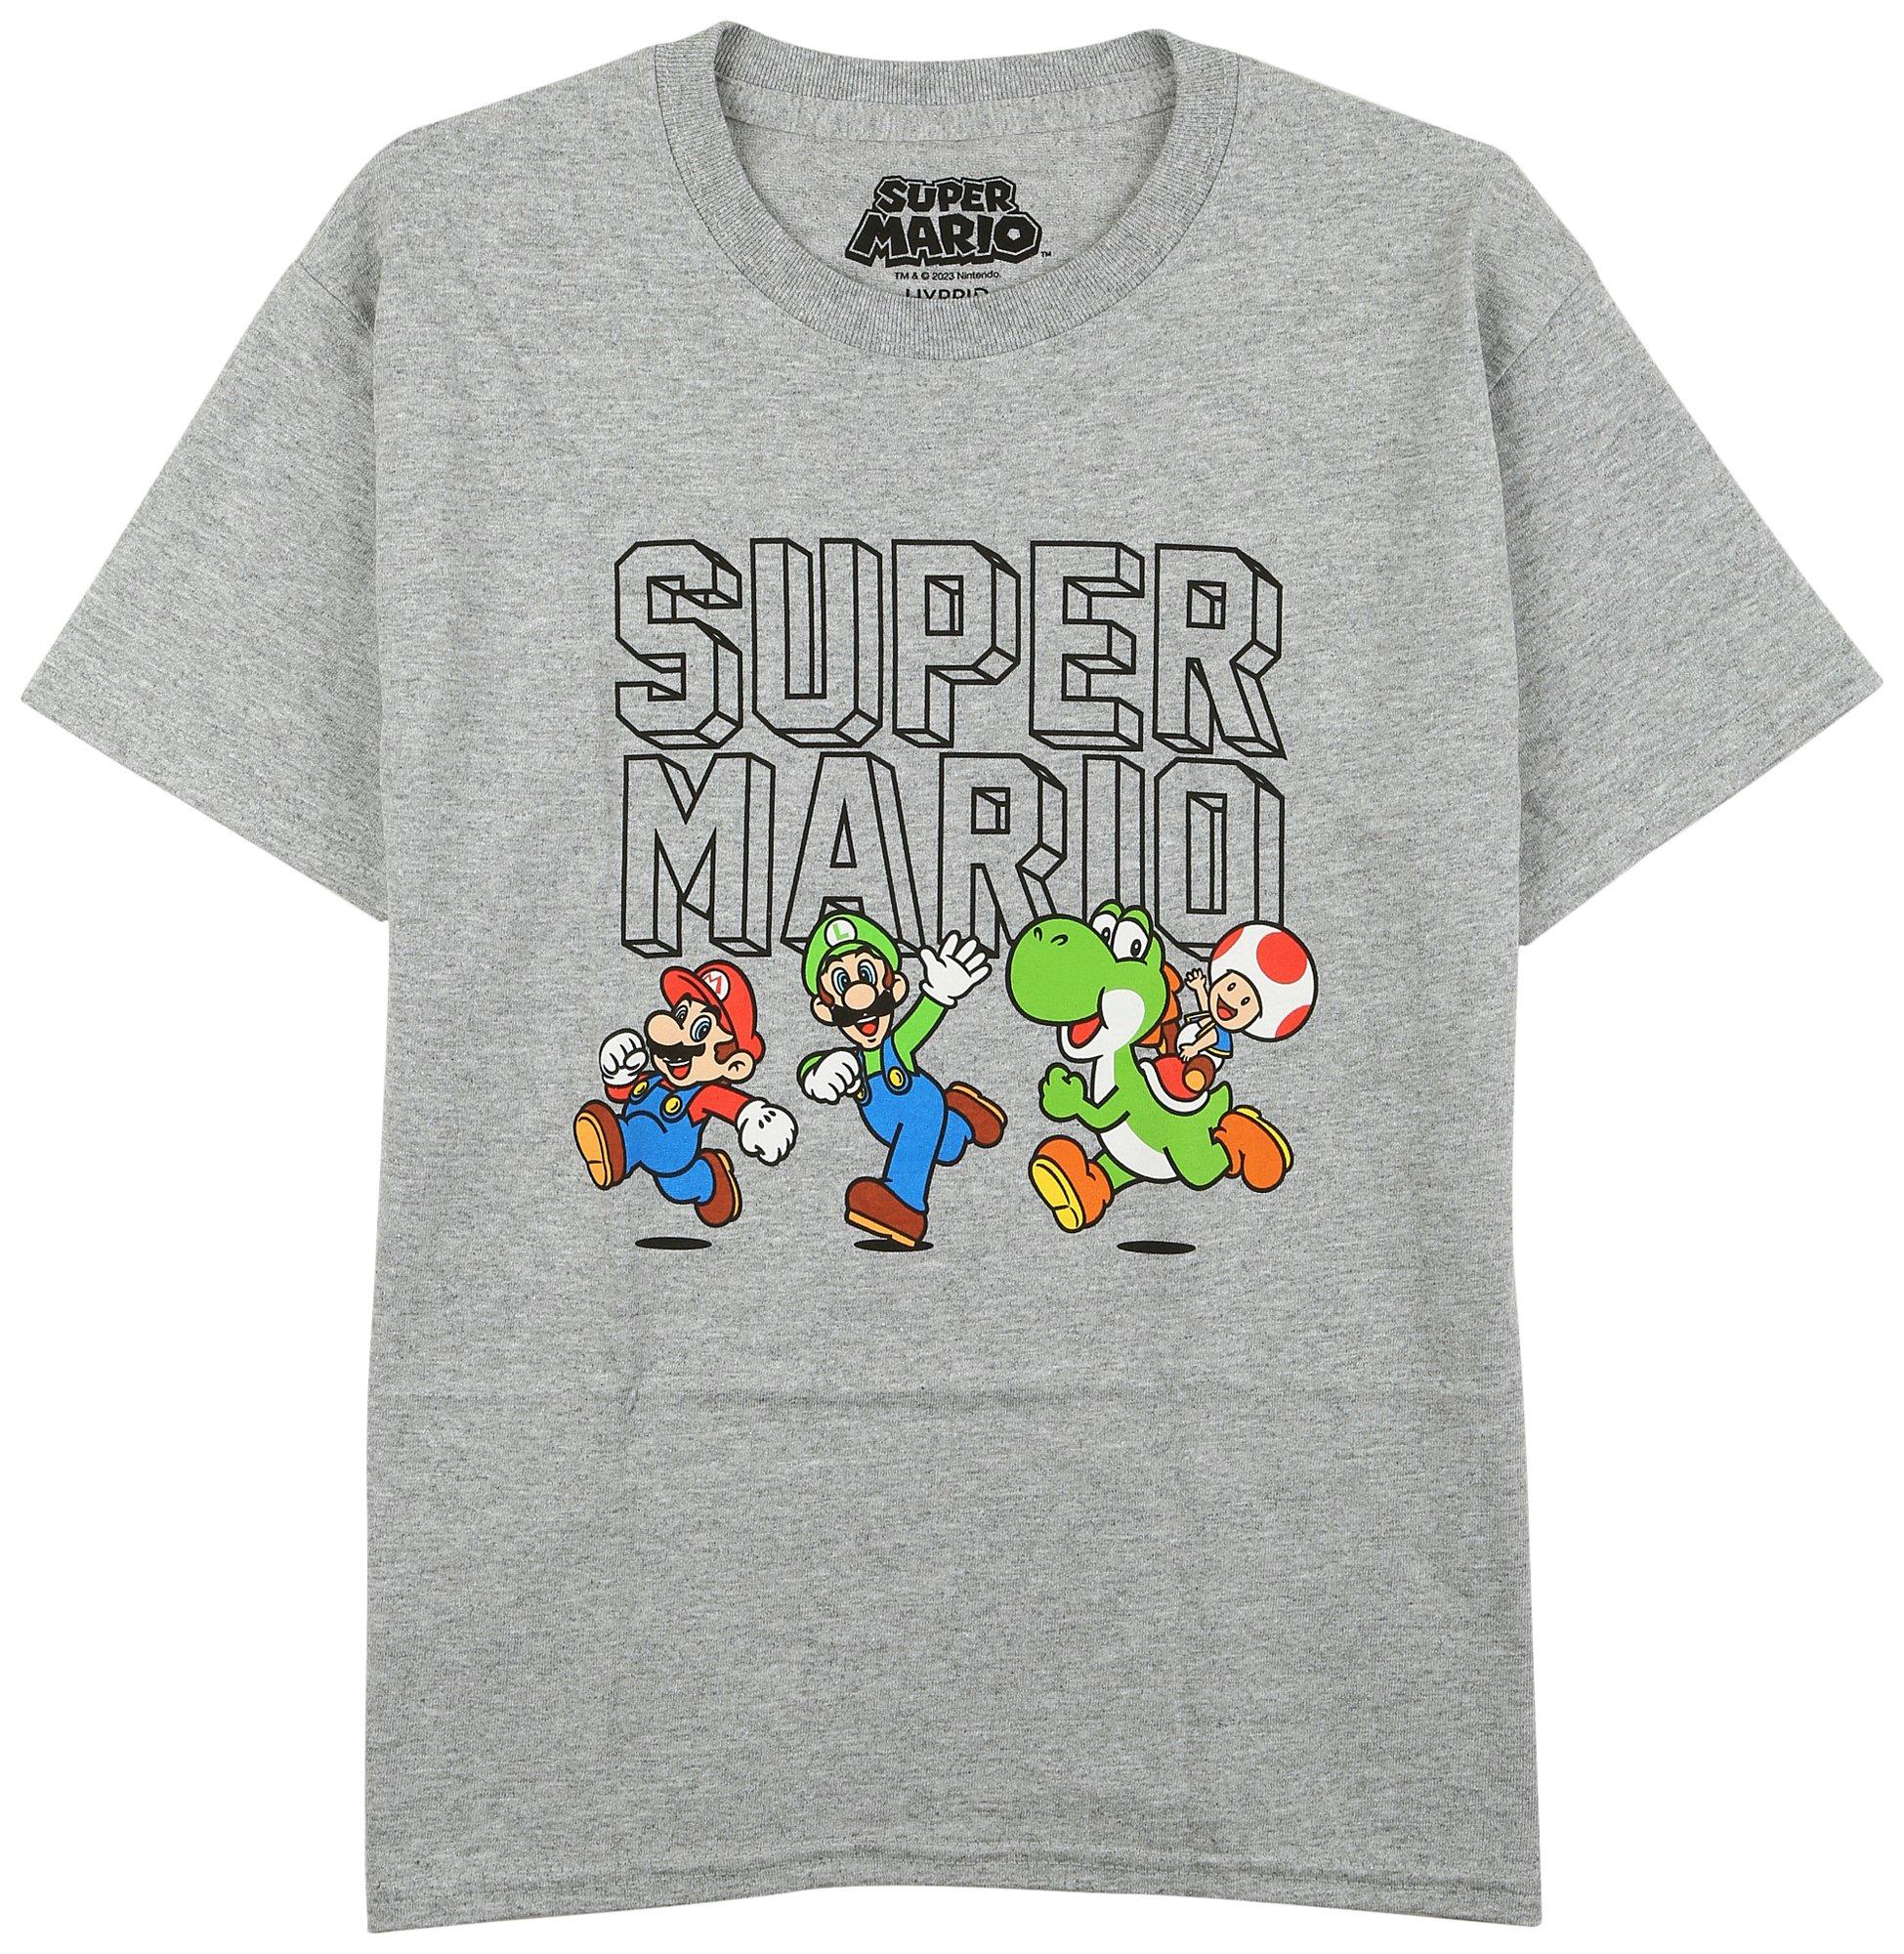 Super Mario Brothers Big Boys Mario Short Sleeve